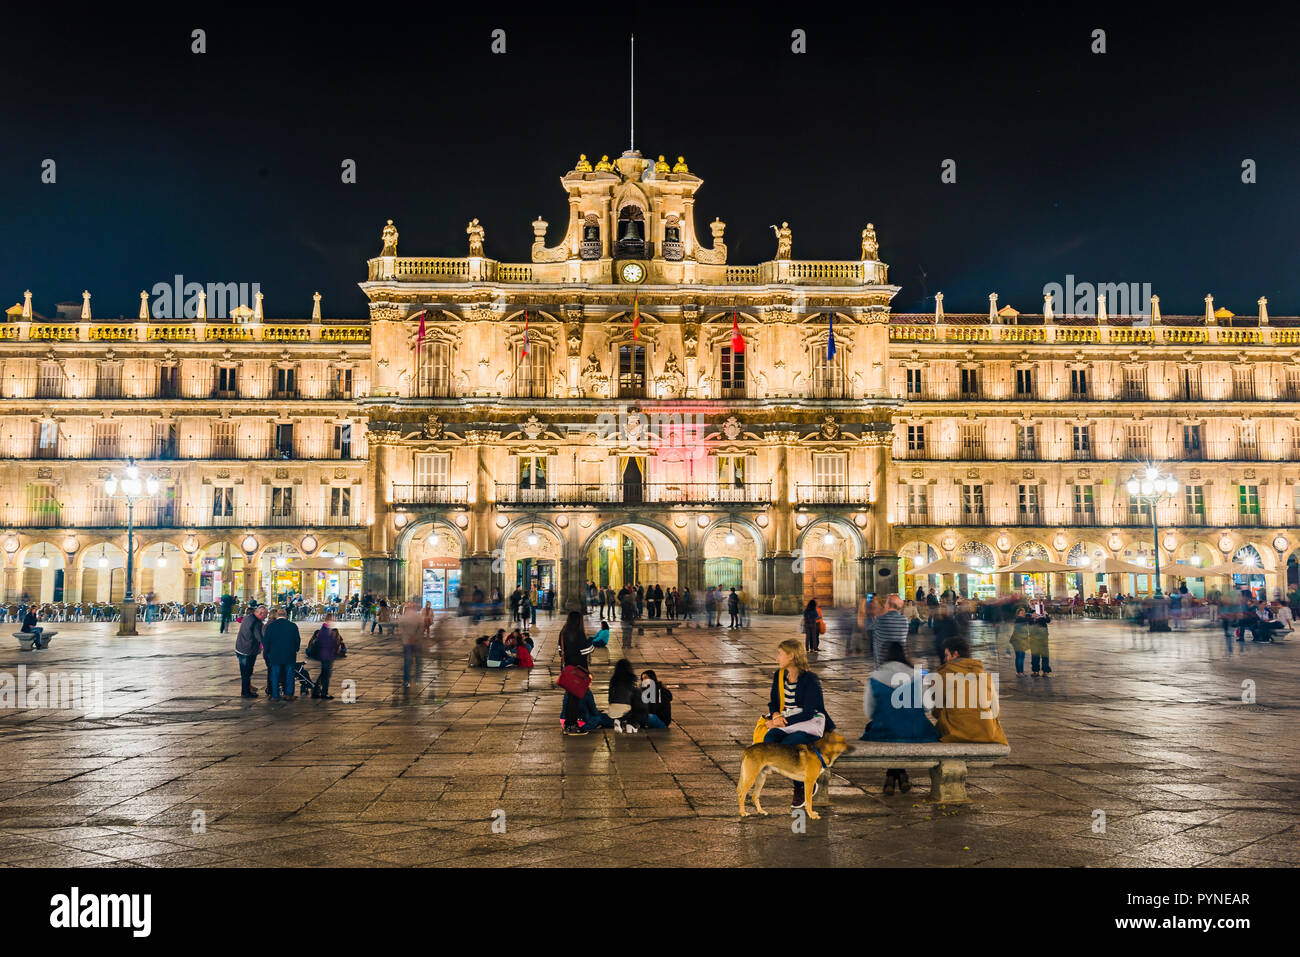 Blick auf die Plaza in der Nacht. Die Plaza Mayor, Hauptplatz, in Salamanca, Spanien, ist ein großer Platz im Zentrum von Salamanca, verwendet als öffentliche s Stockfoto